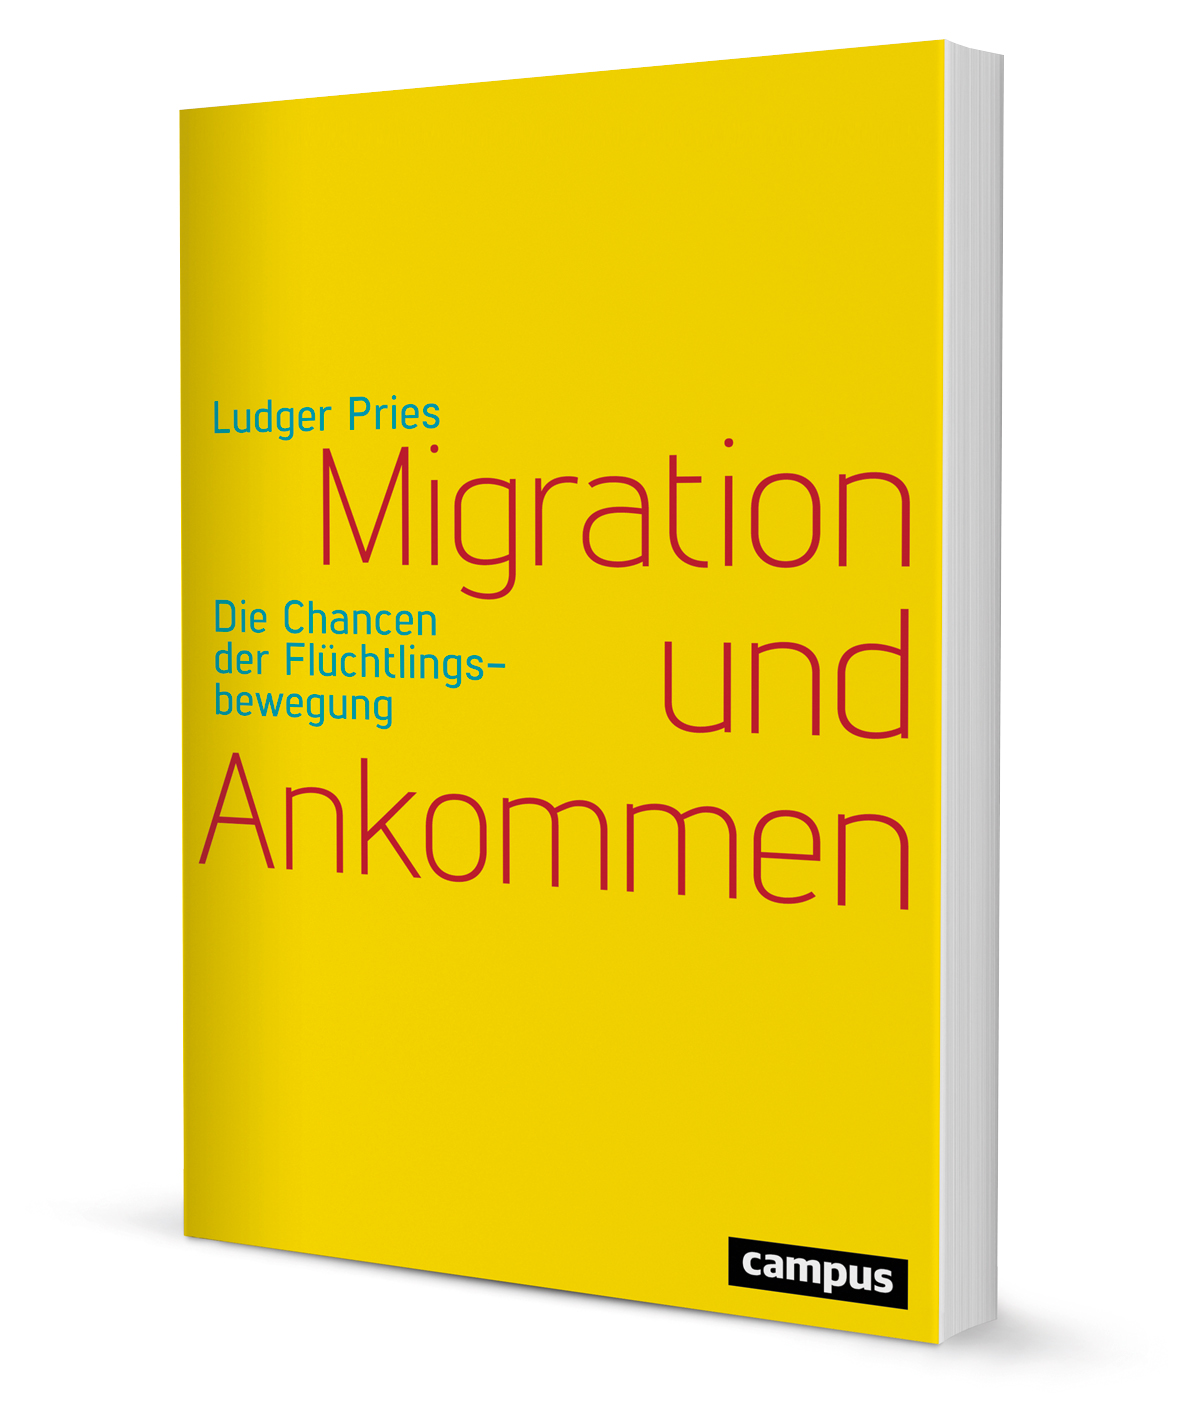 Migration und Ankommen